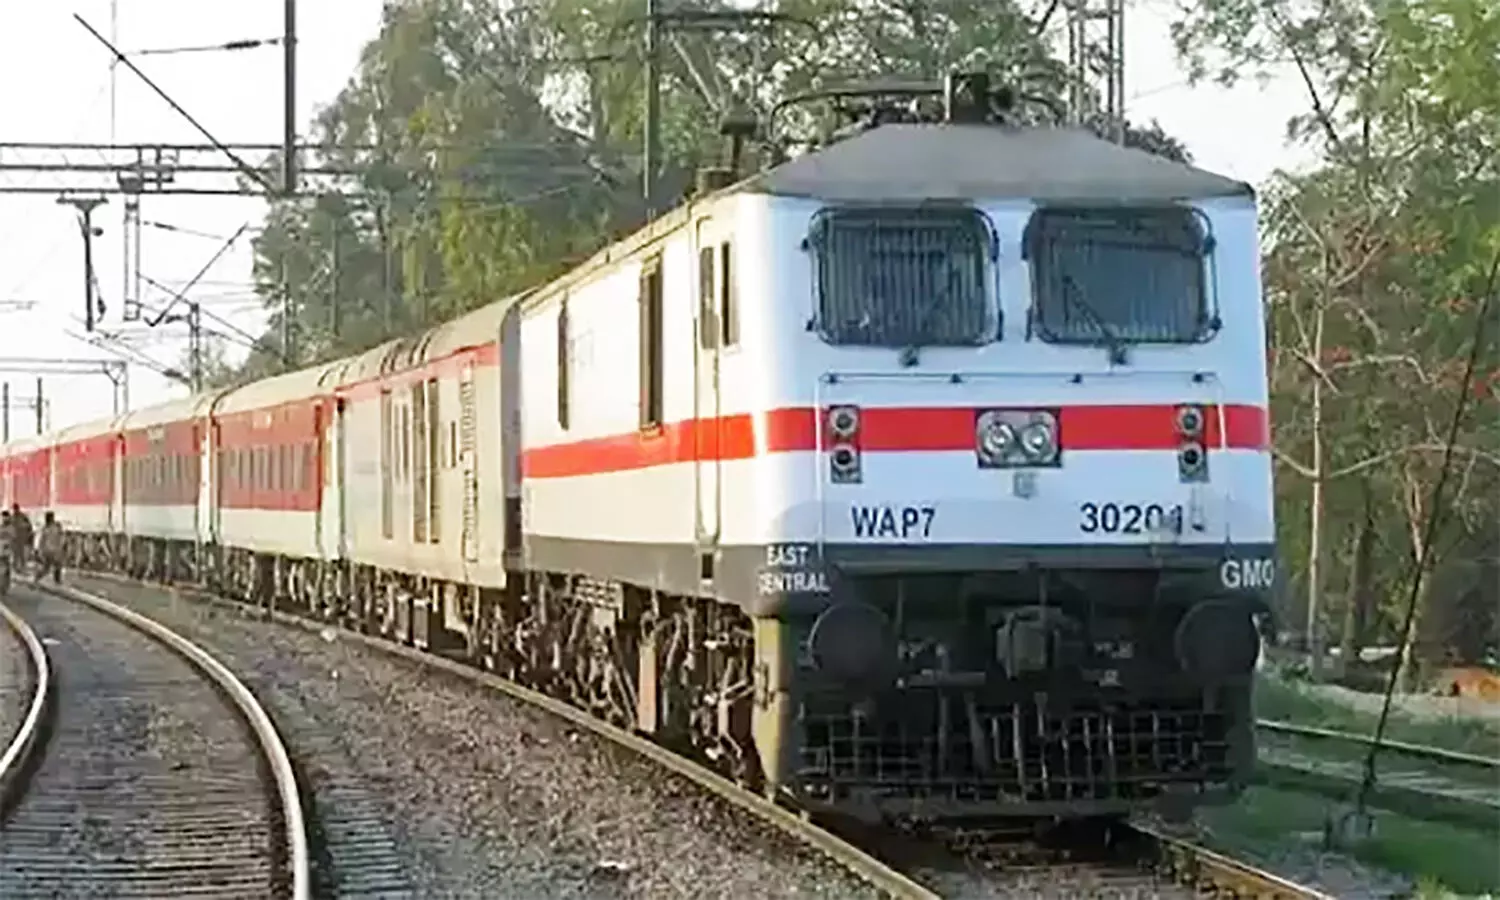 Holi Special Train: रेल यात्रियों को सुविधा, रीवा-रानी कमलापति स्टेशन के बीच चलेगी होली स्पेशल